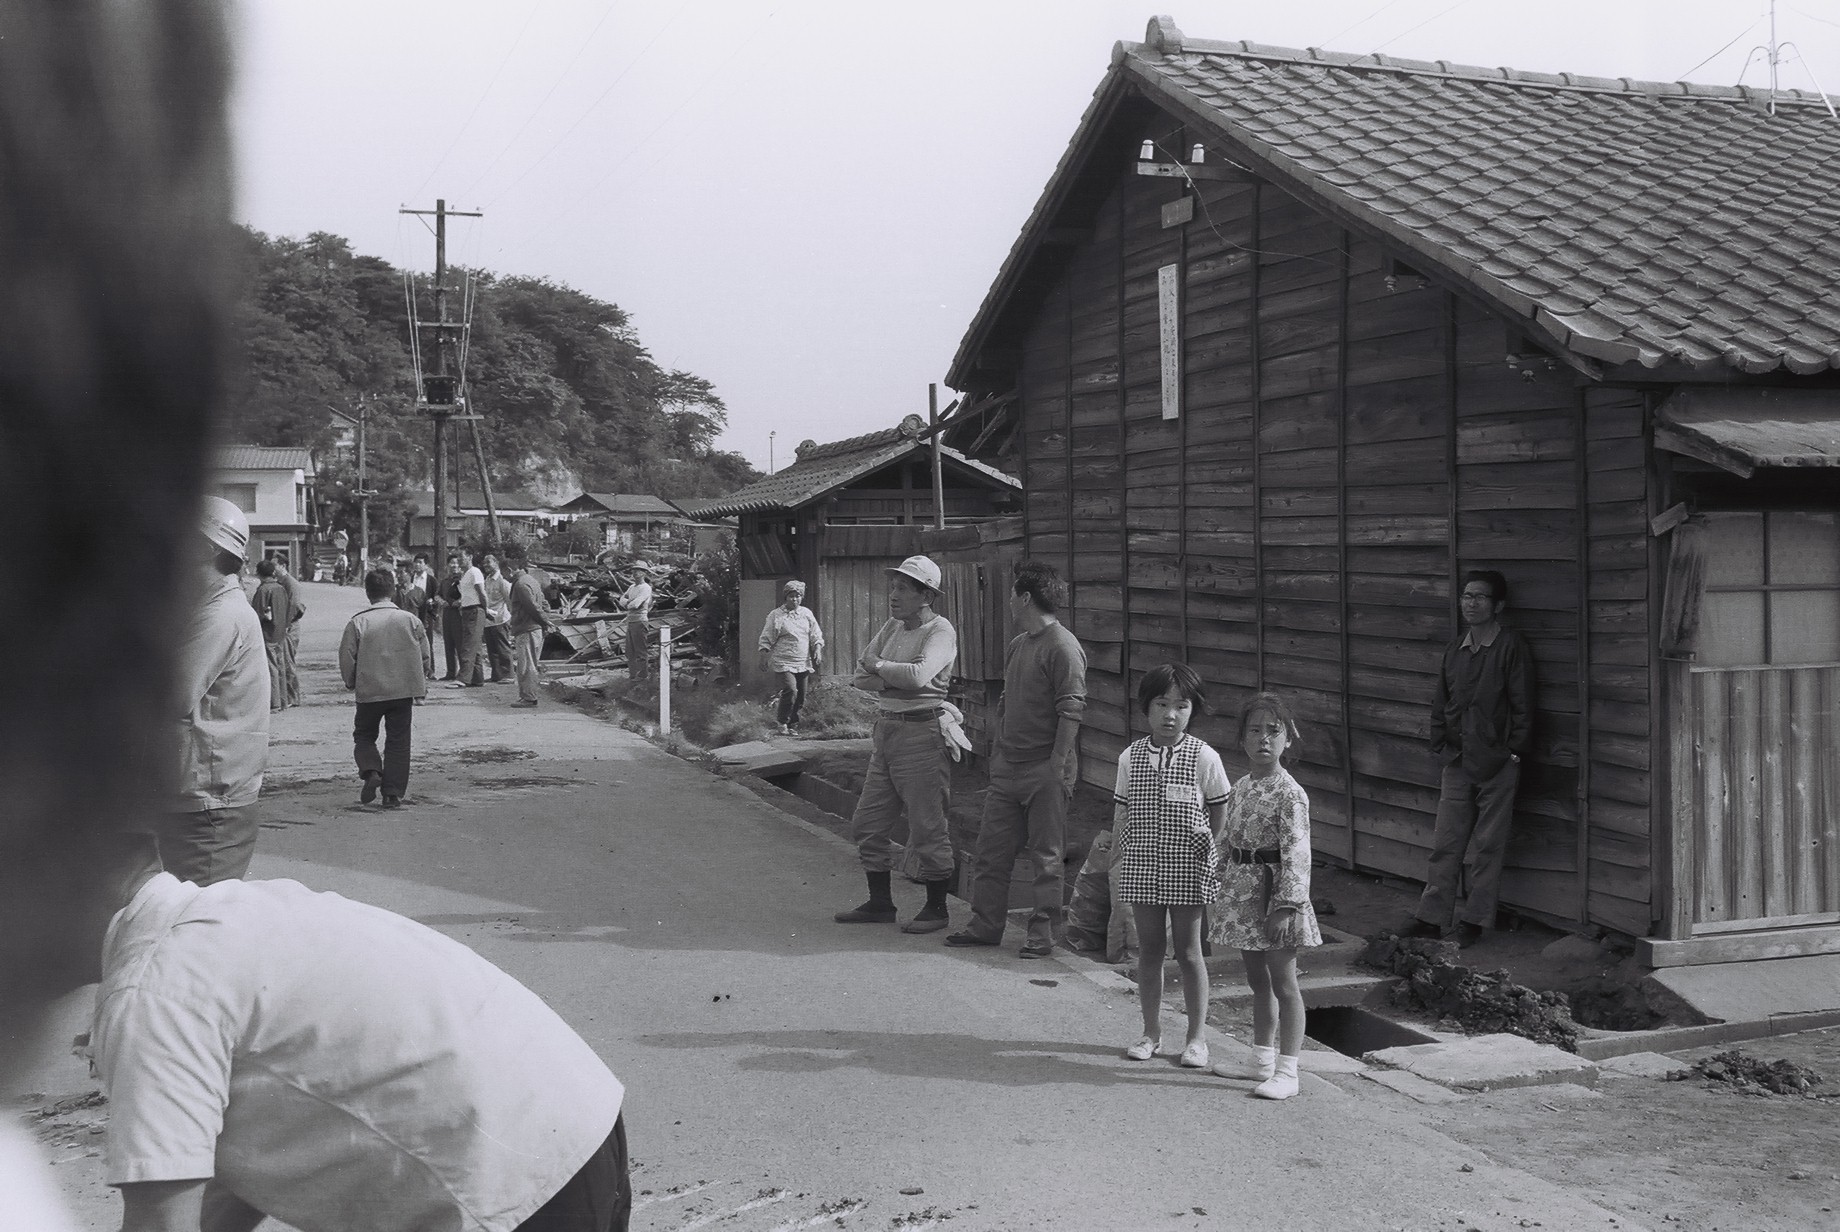 9 八仙炭鉱住宅の取り壊しを見守る人々（1）(昭和47年6月、いわき市撮影)